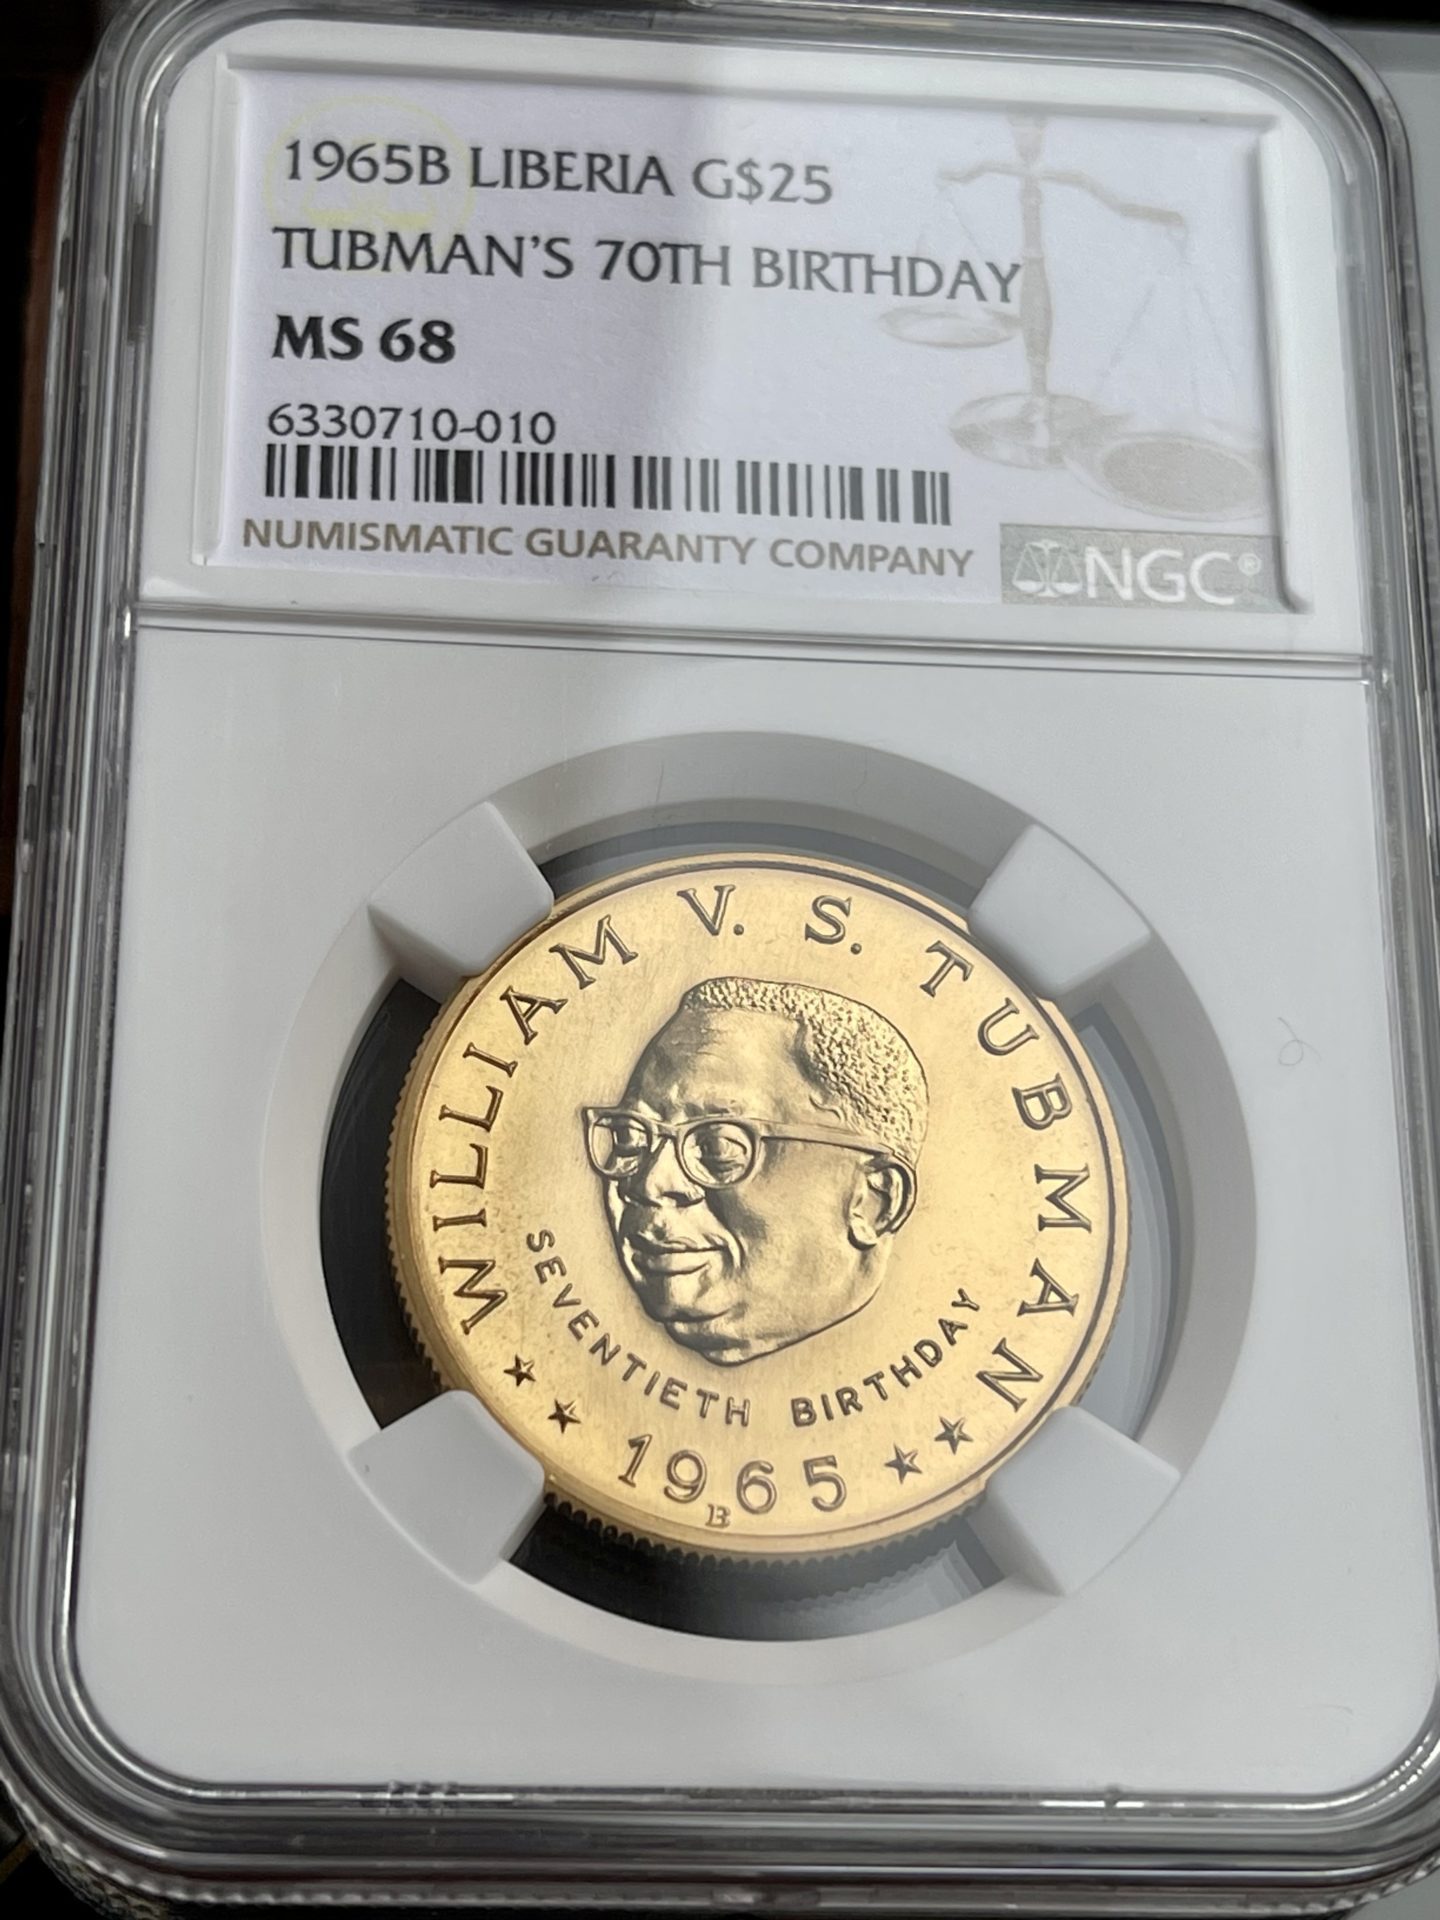 Liberia - Oro da $ 25 - 1965 B - Tubman - 70° compleanno - MGC MS68